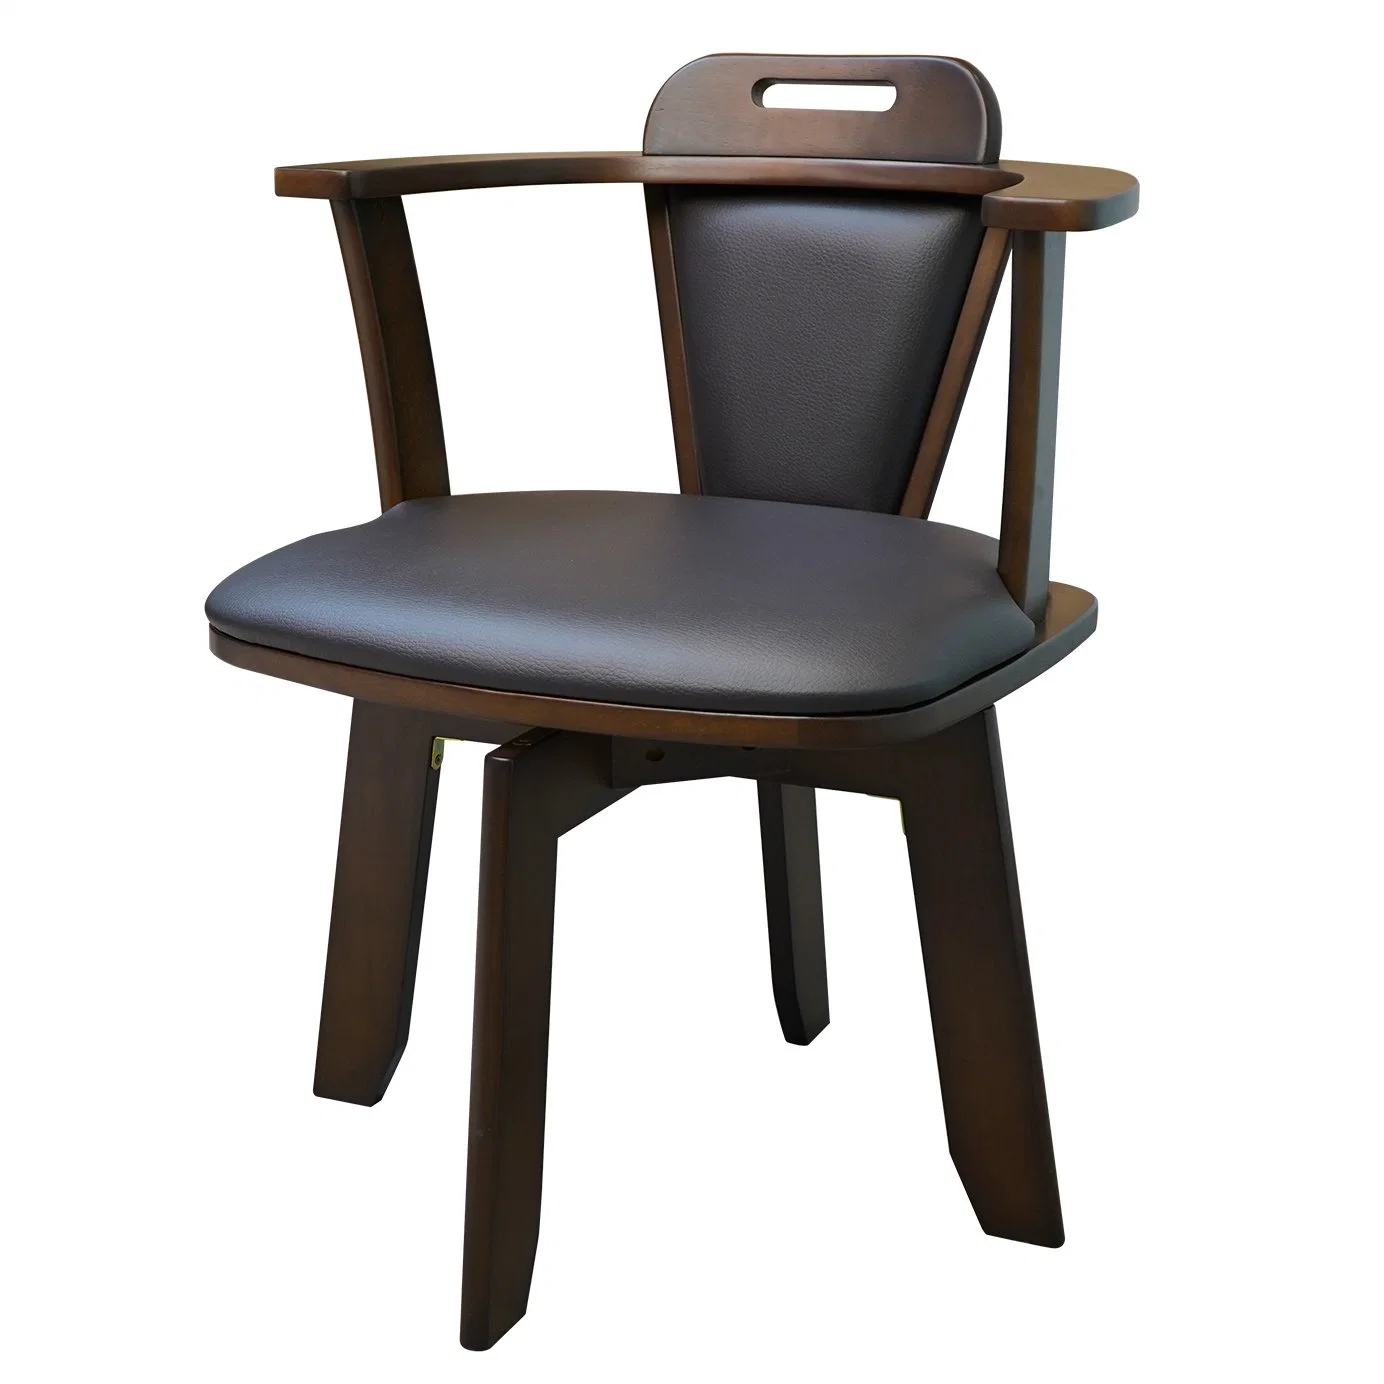 Chaise pivotante en bois massif Chaise de salle à manger Chaise de bureau Chaise de bureau